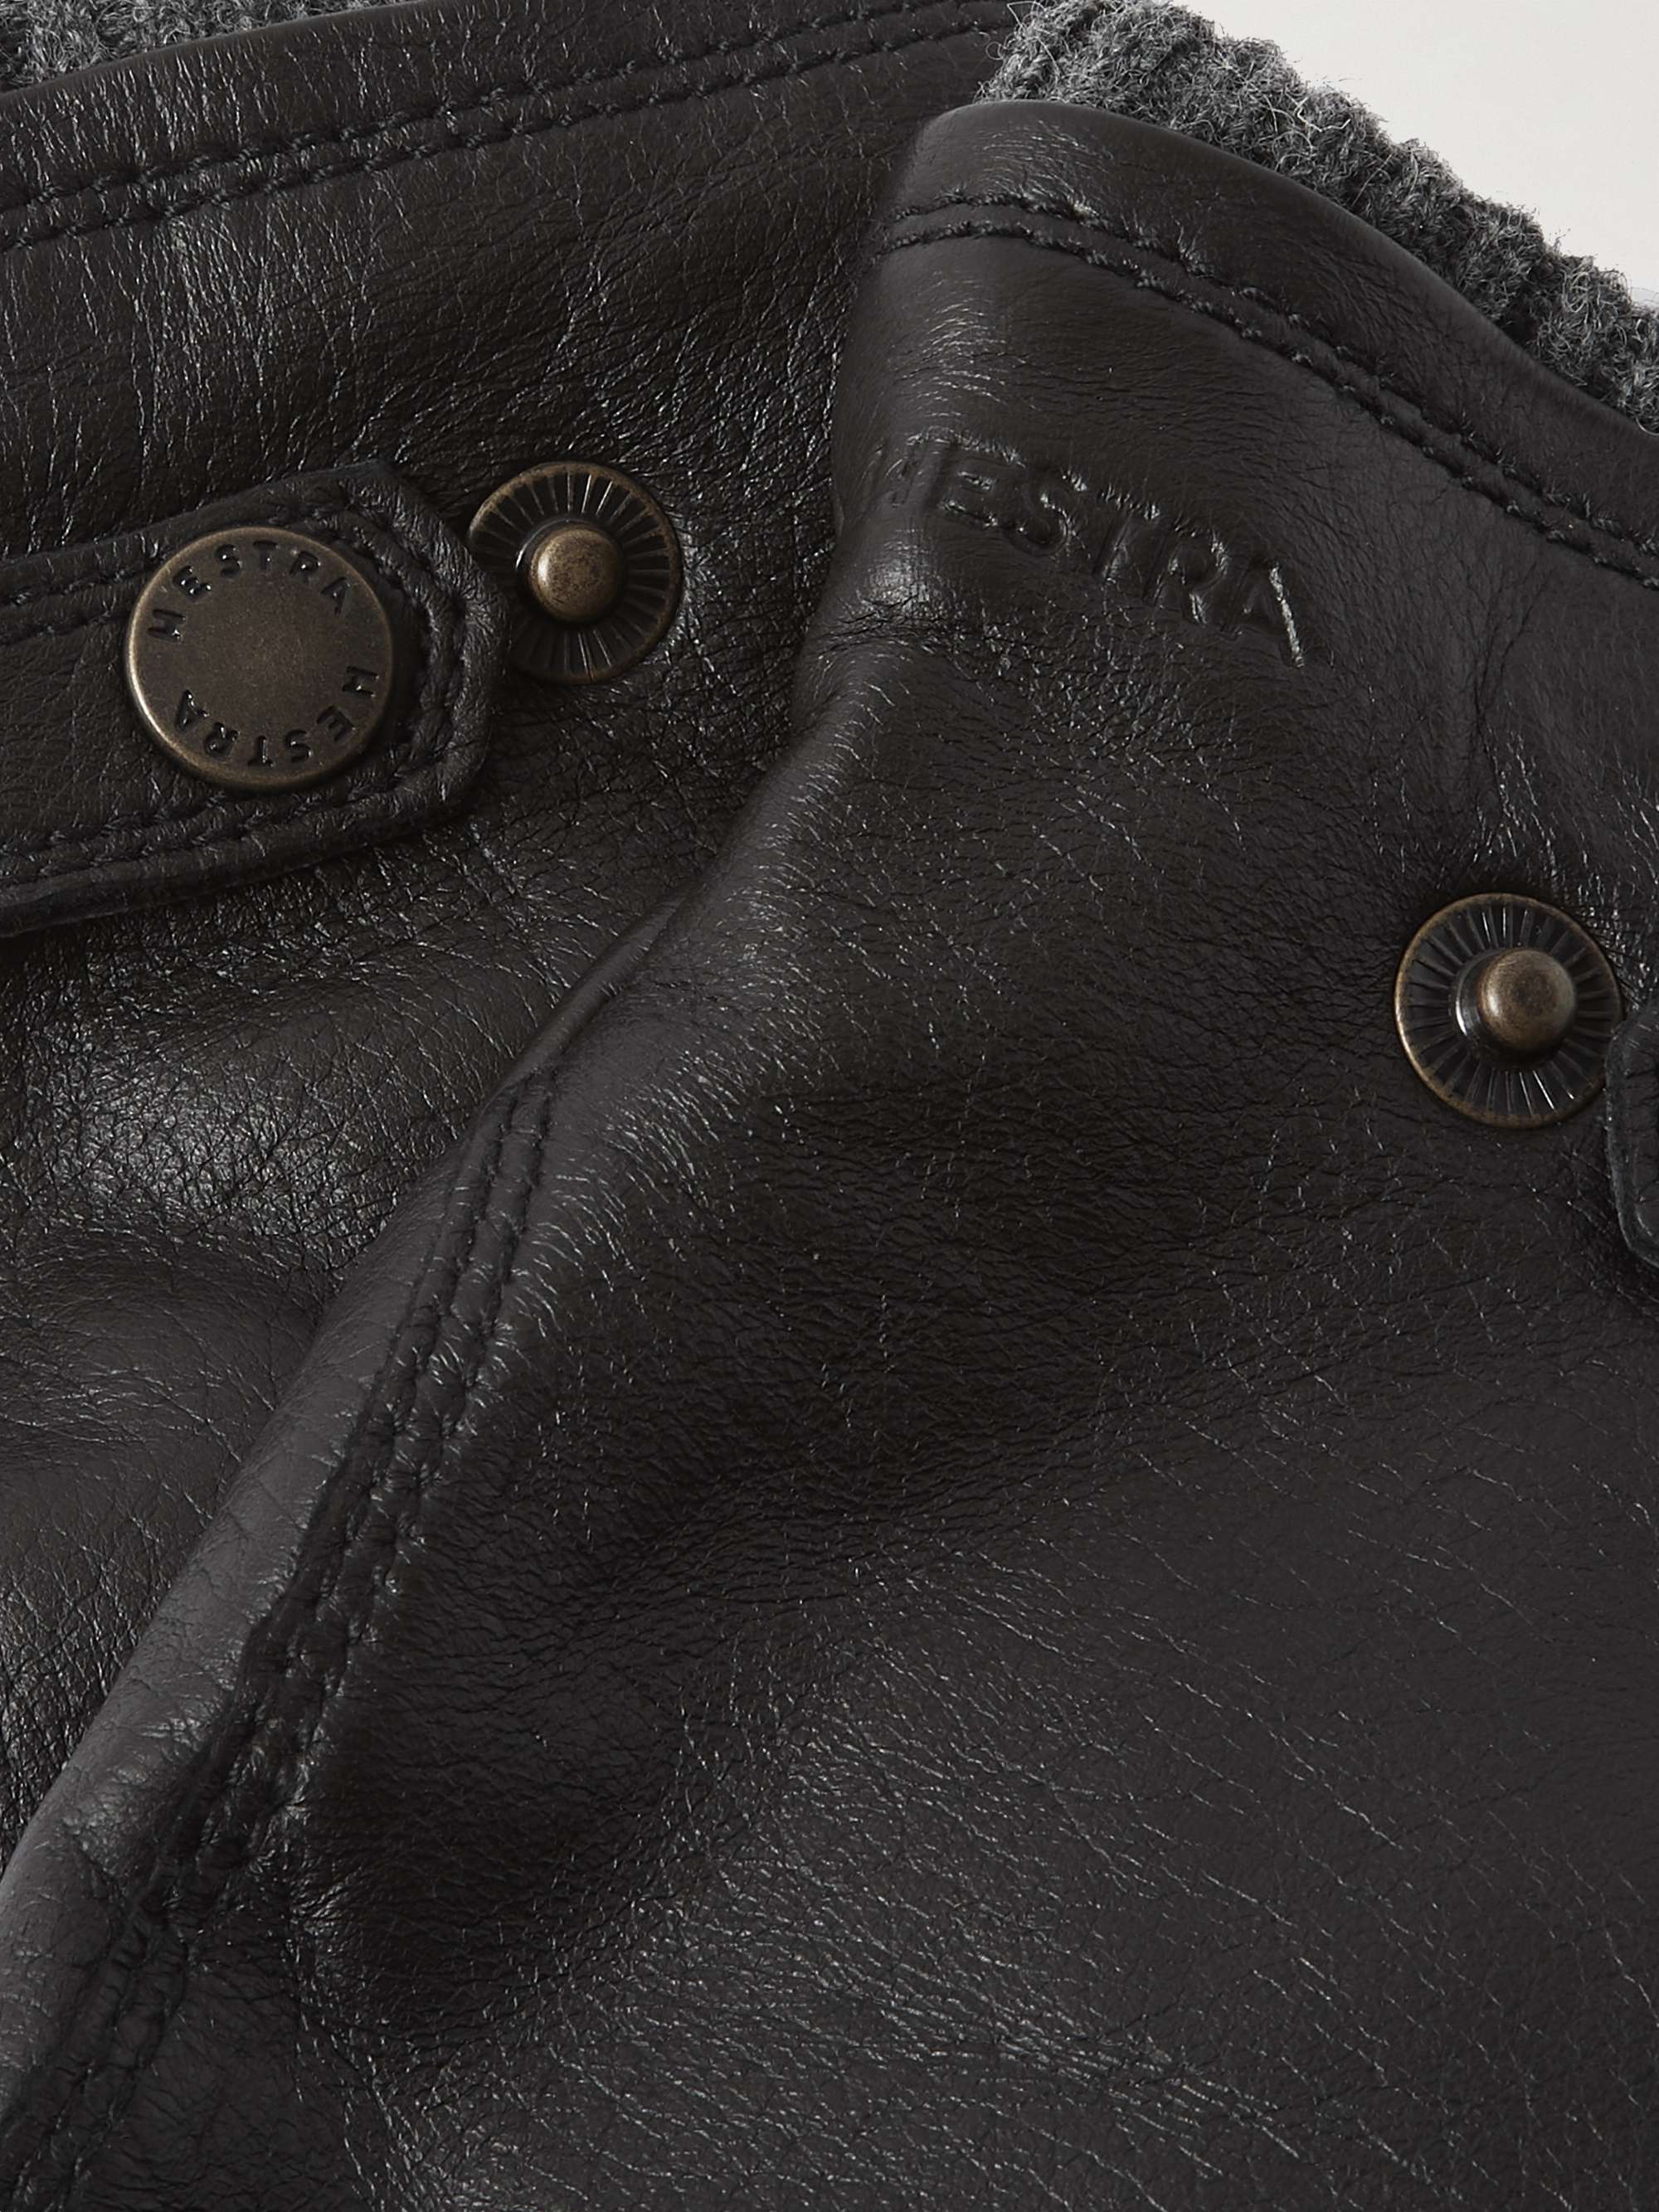 HESTRA Birger PrimaLoft Fleece-Lined Full-Grain Leather Gloves for Men | MR  PORTER